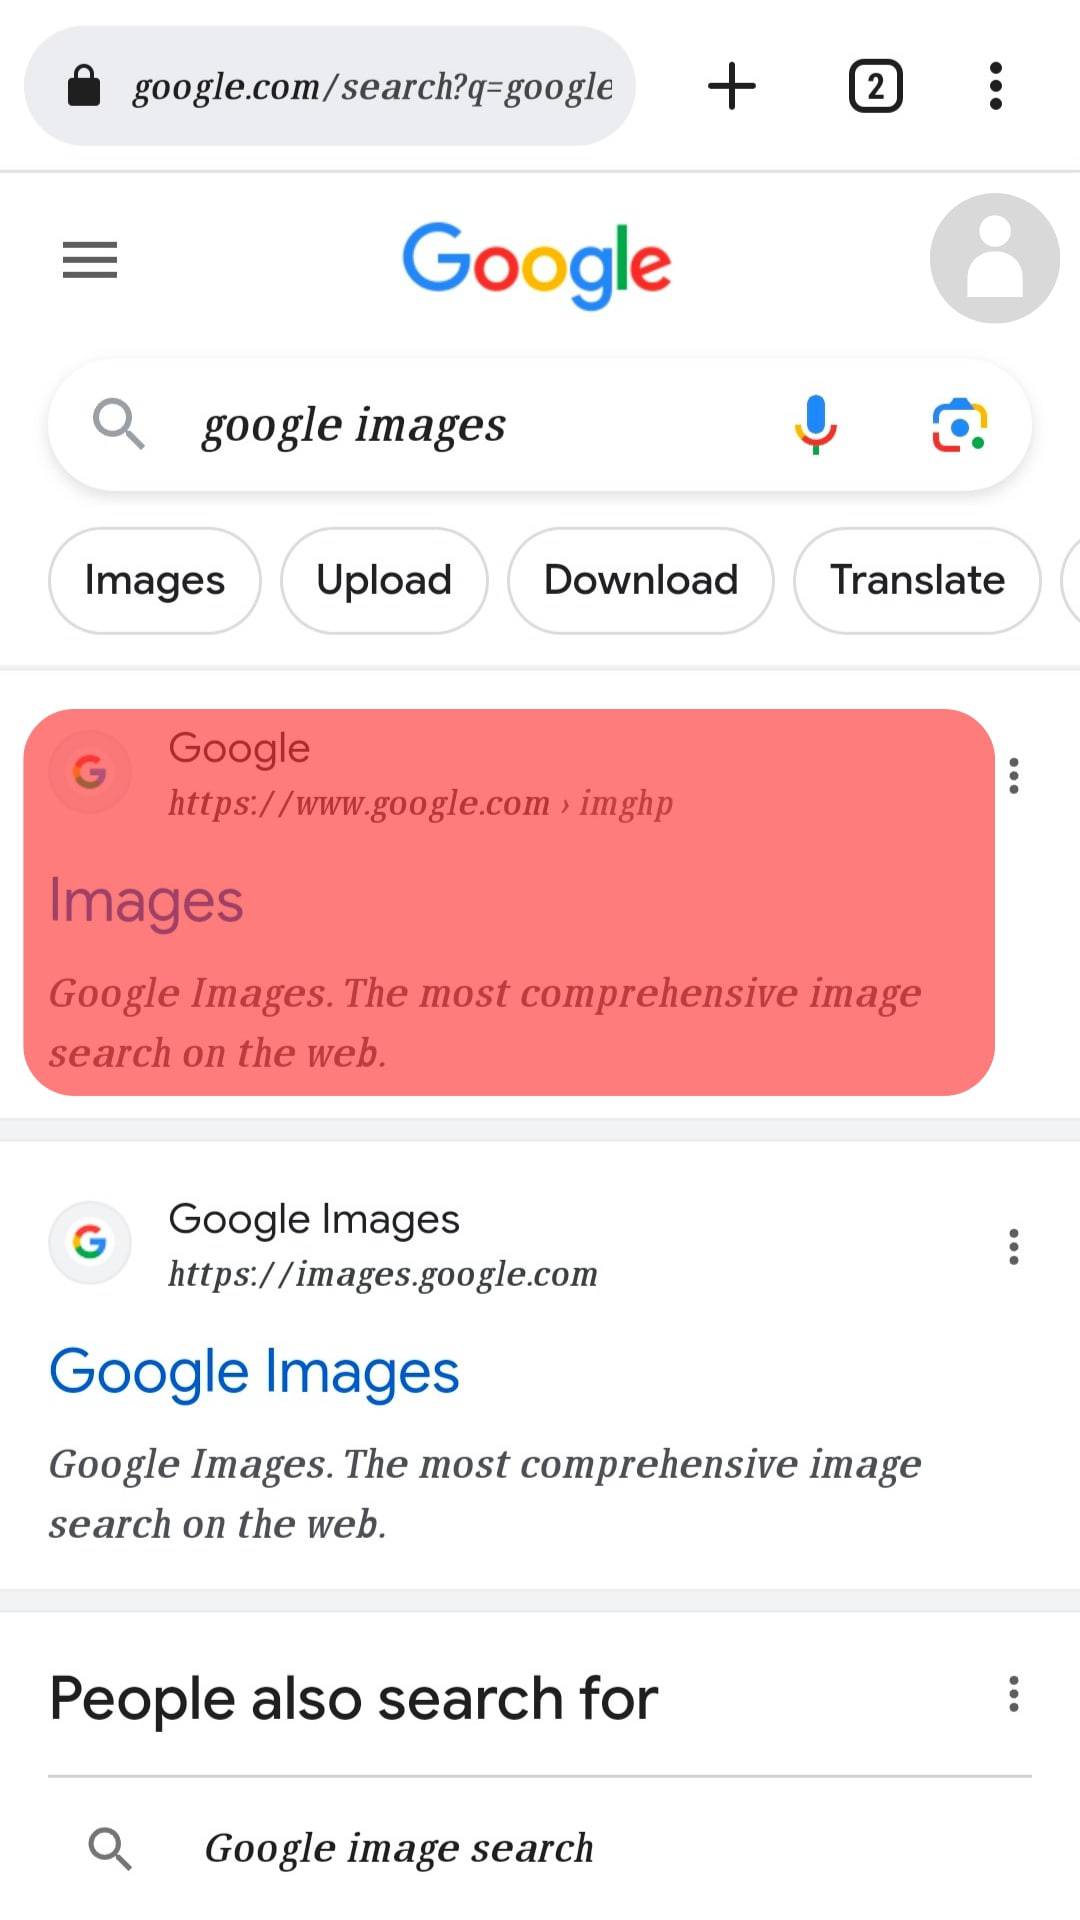 Launch Google Images.